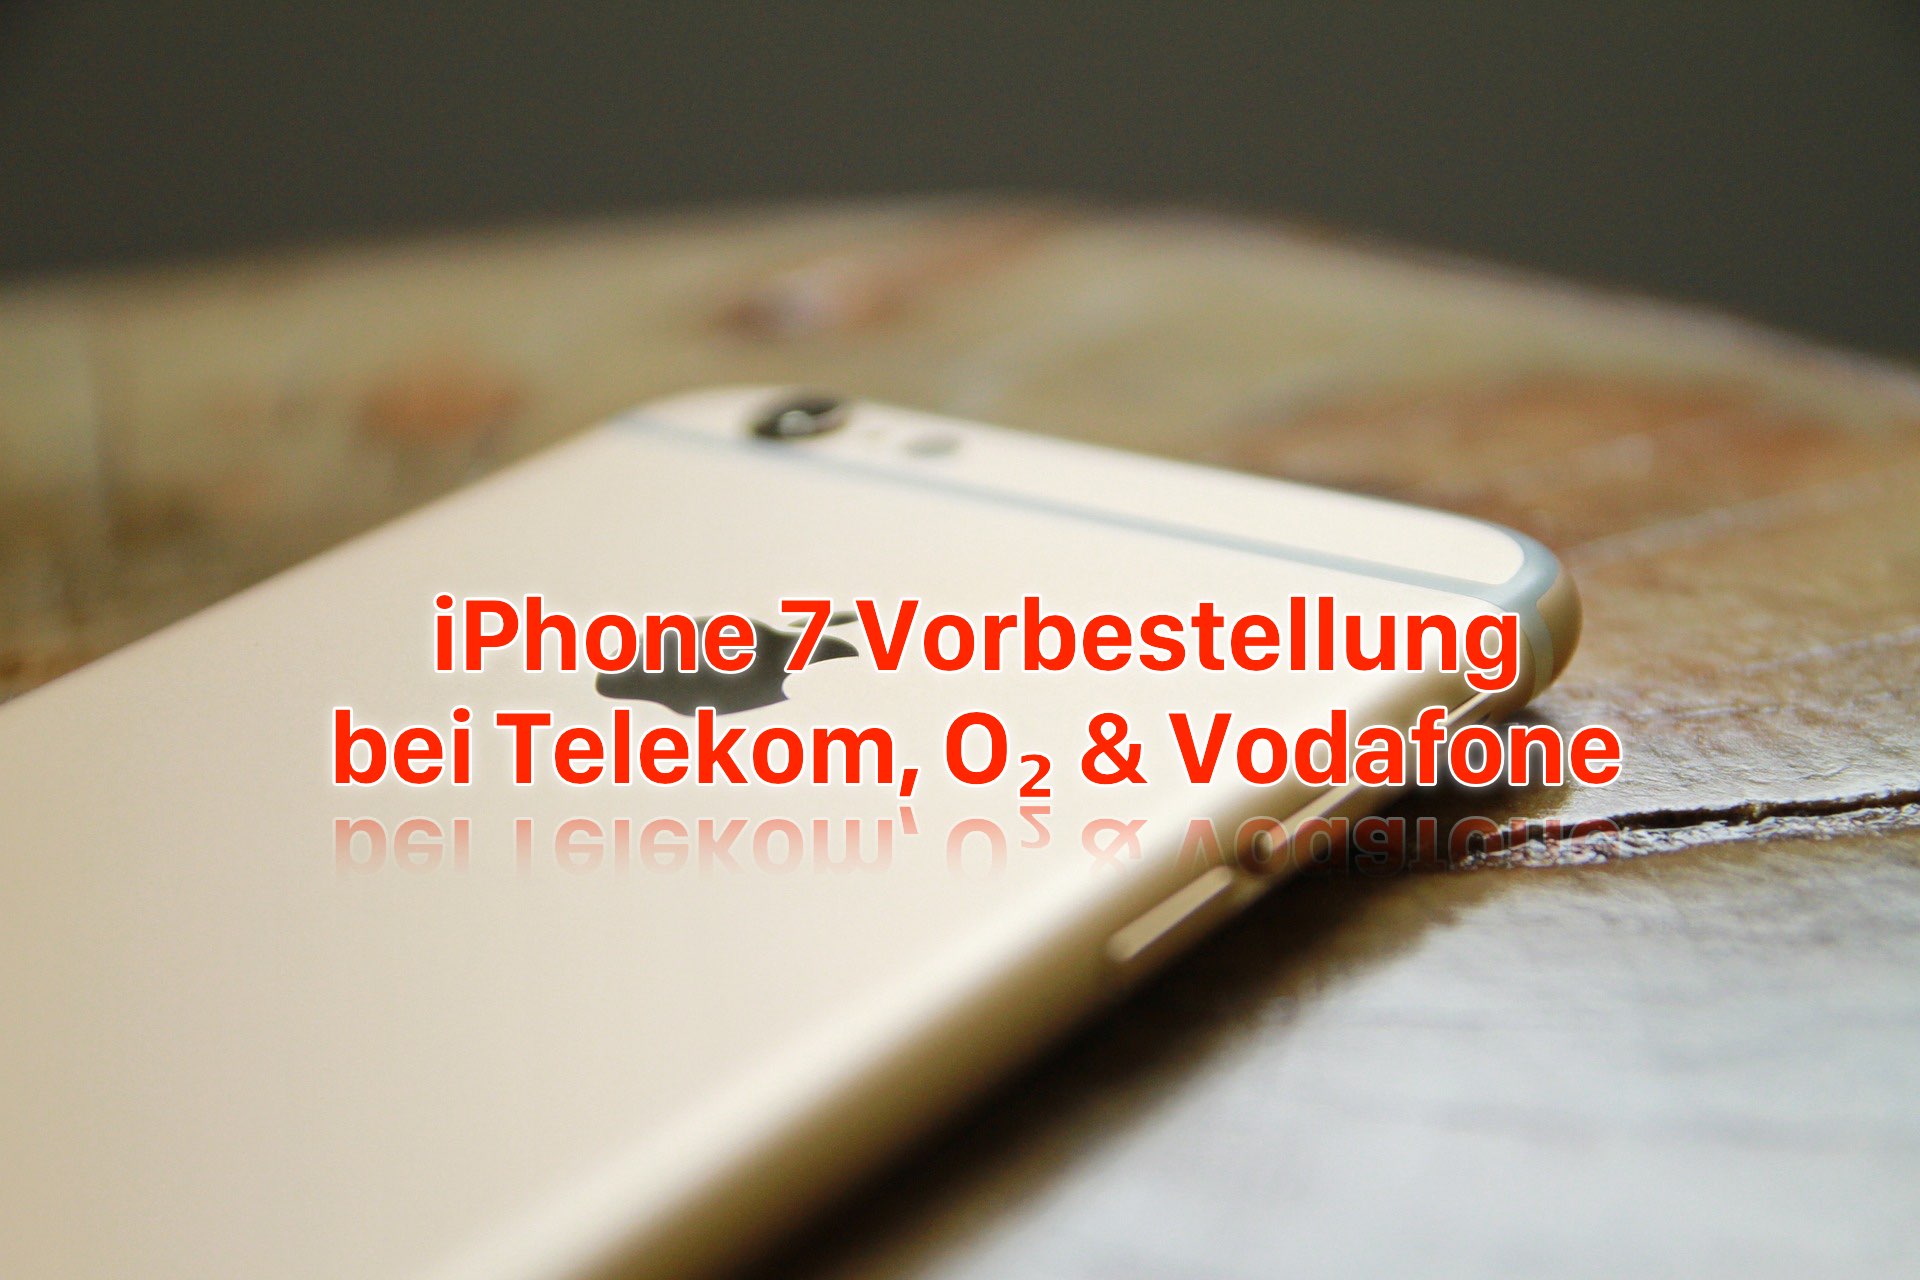 iPhone 7 Vorbestellung: bei Telekom, O2 und Vodafone iPhone 7 reservieren! 1